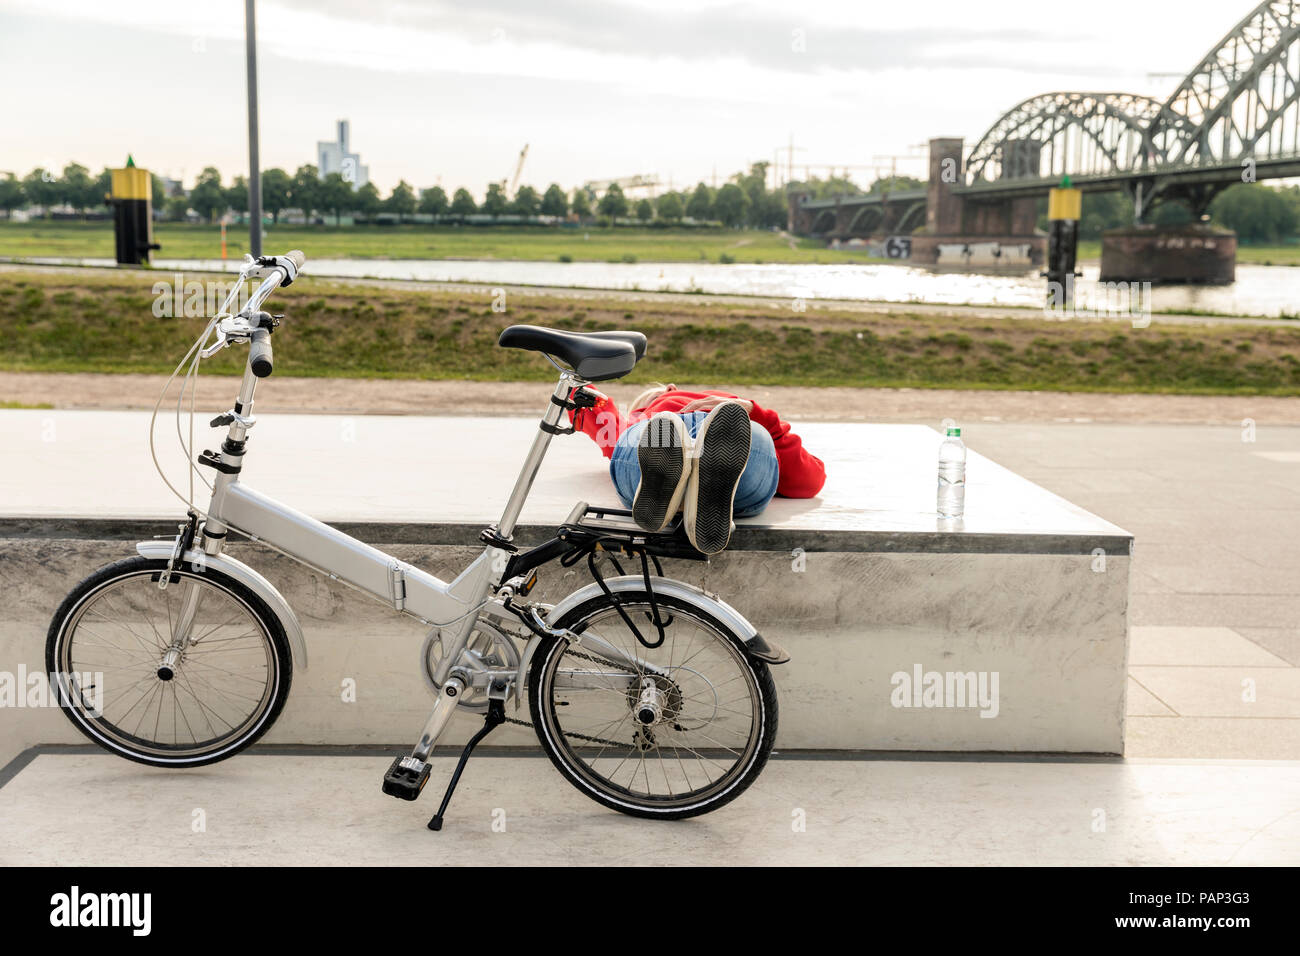 Senior woman avec vélo de ville ayant une pause allongé sur la plate-forme Banque D'Images